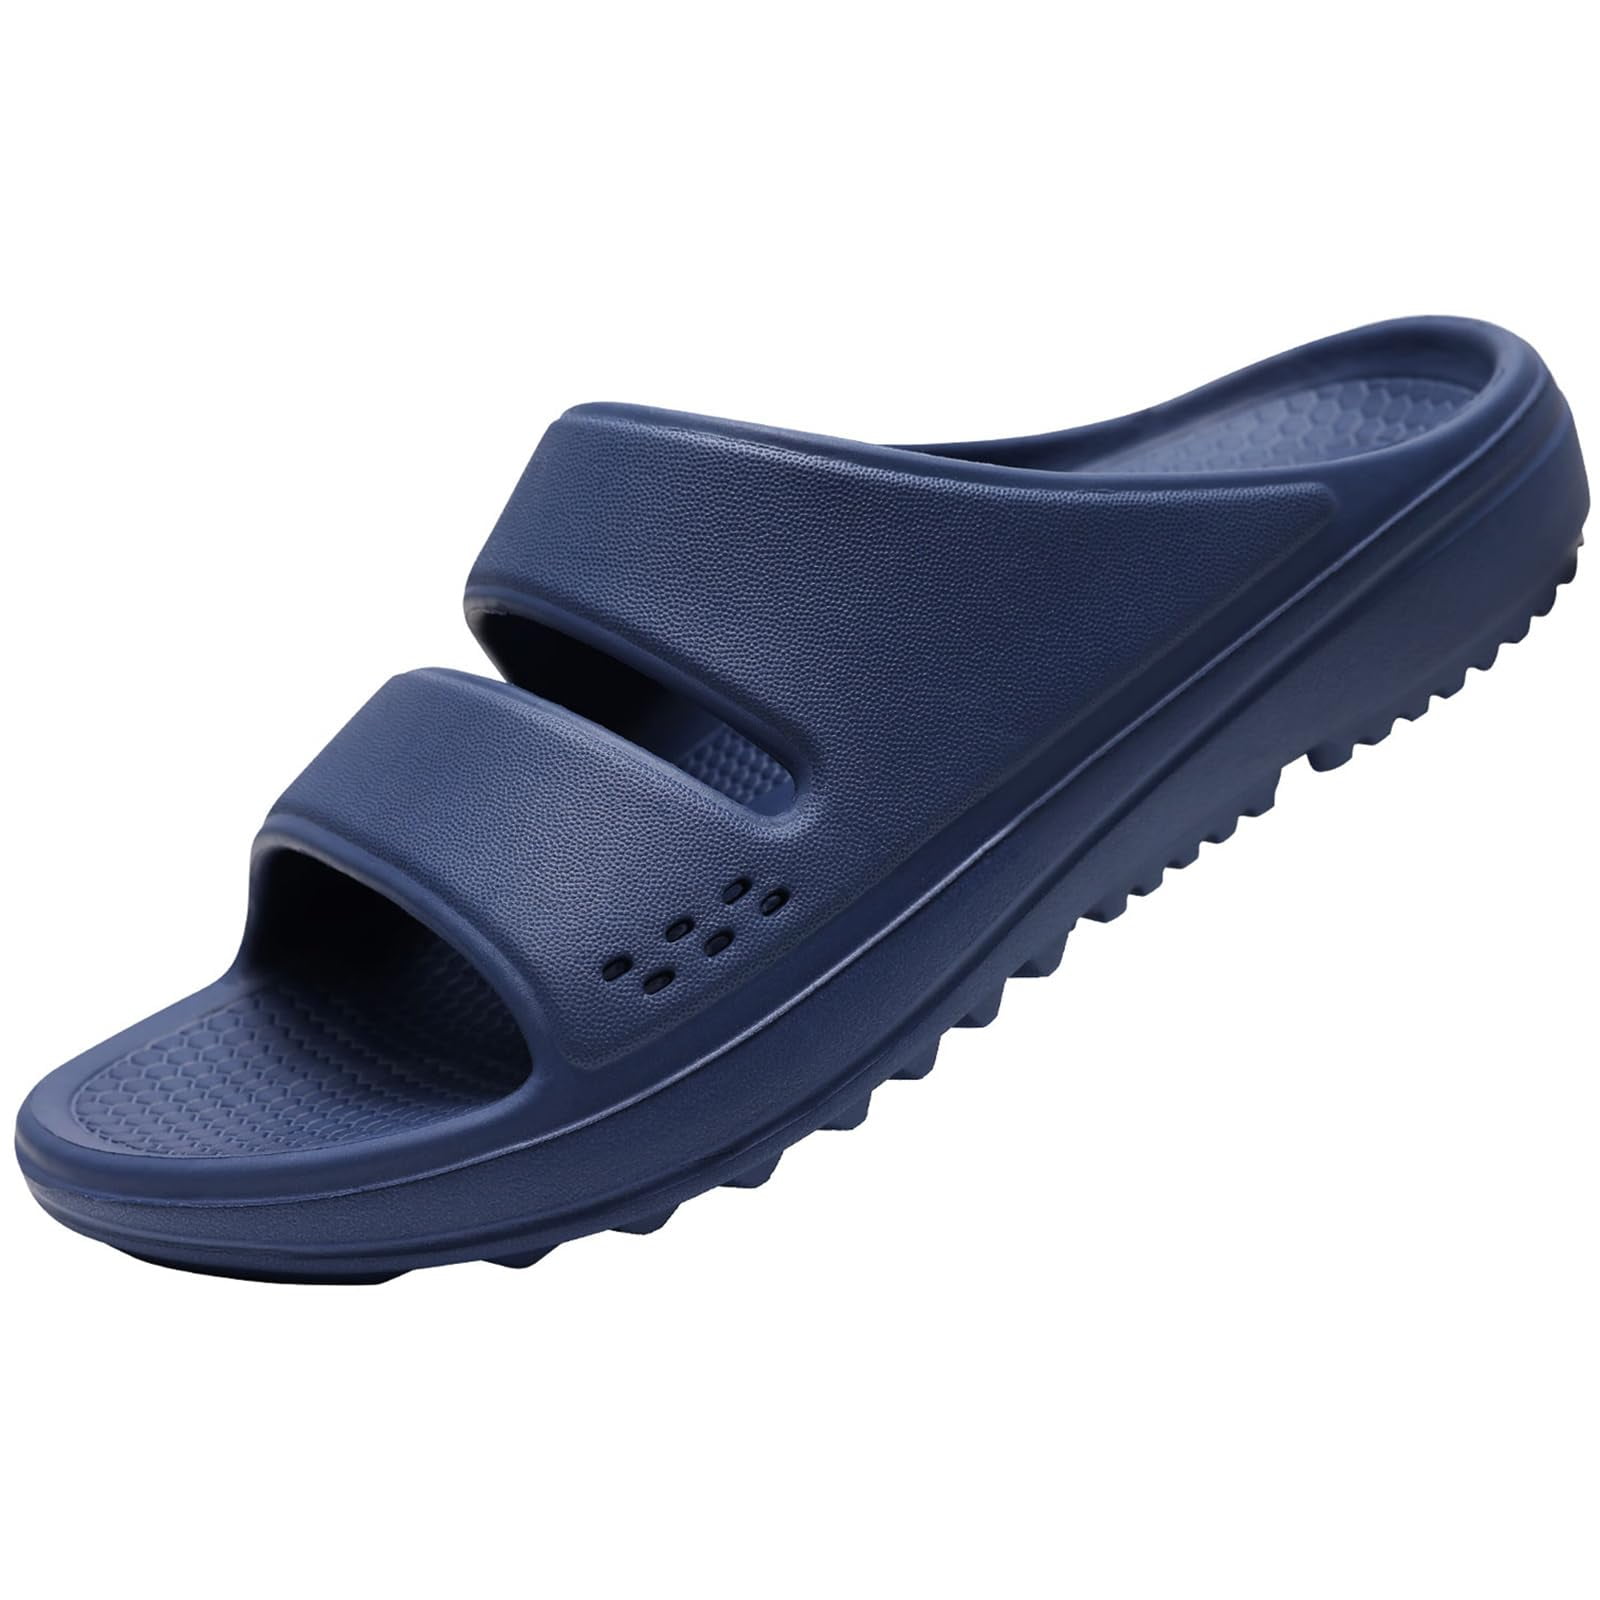 Litfun Unisex Slides Sandals Soft Thick Sole Lightweight Non-Slip ...